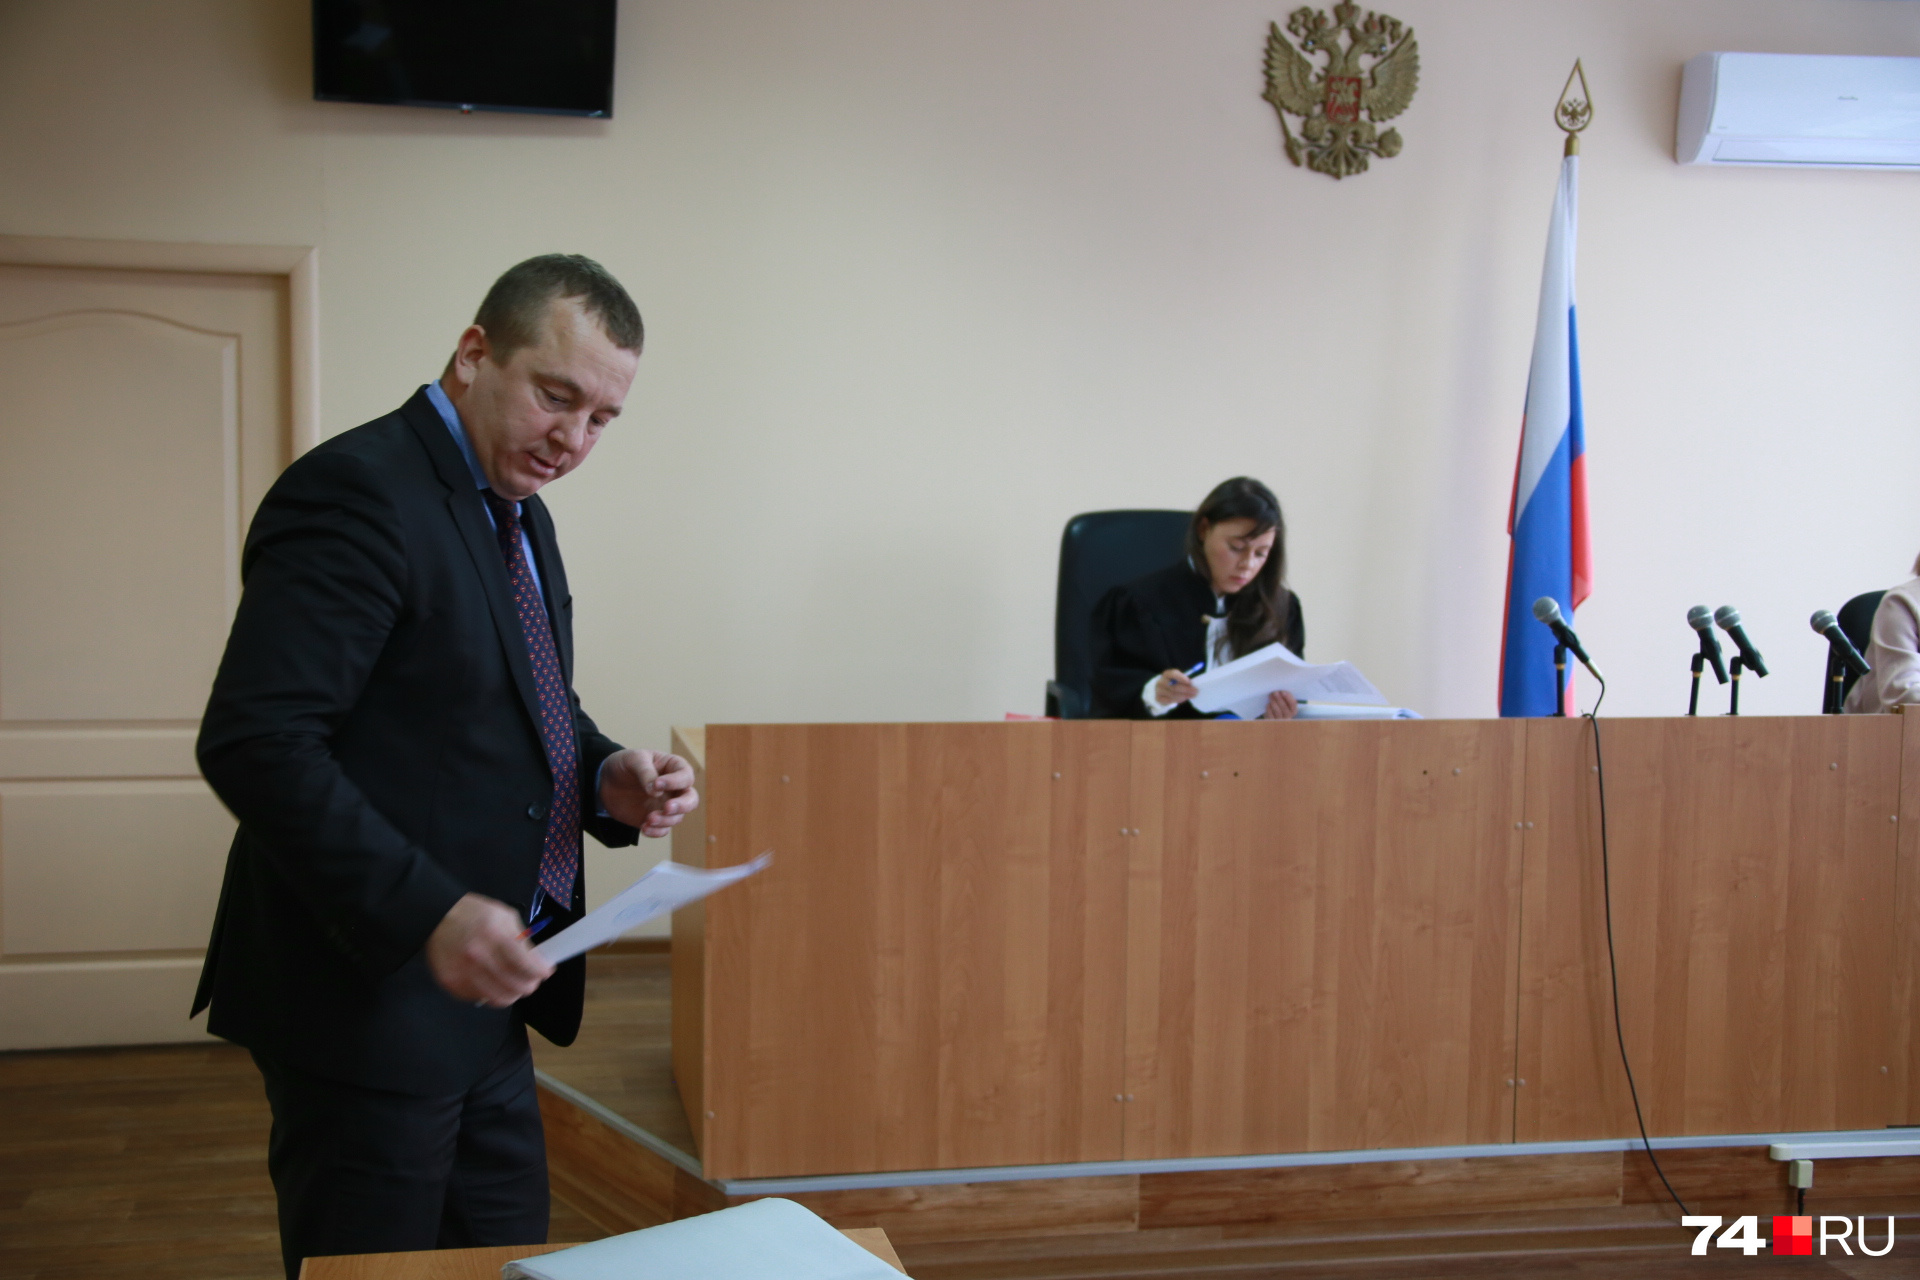 Адвокат Иван Черняков в суде настаивал, что следователь не уведомил Уфимцева о заседании должным образом